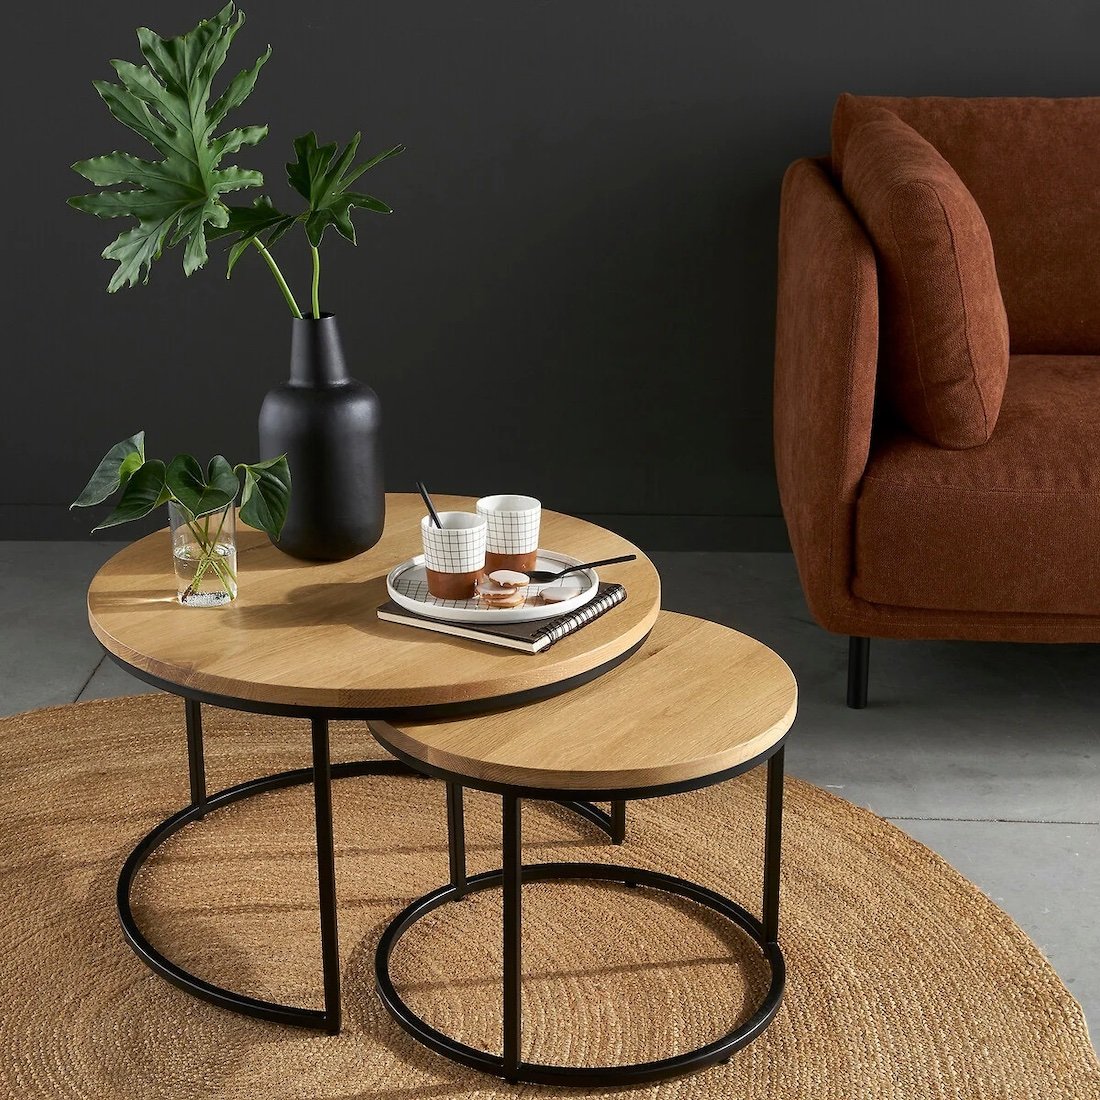 table bois ronde pieds metalliques noir canape velours orange rouge mur noir plante verte